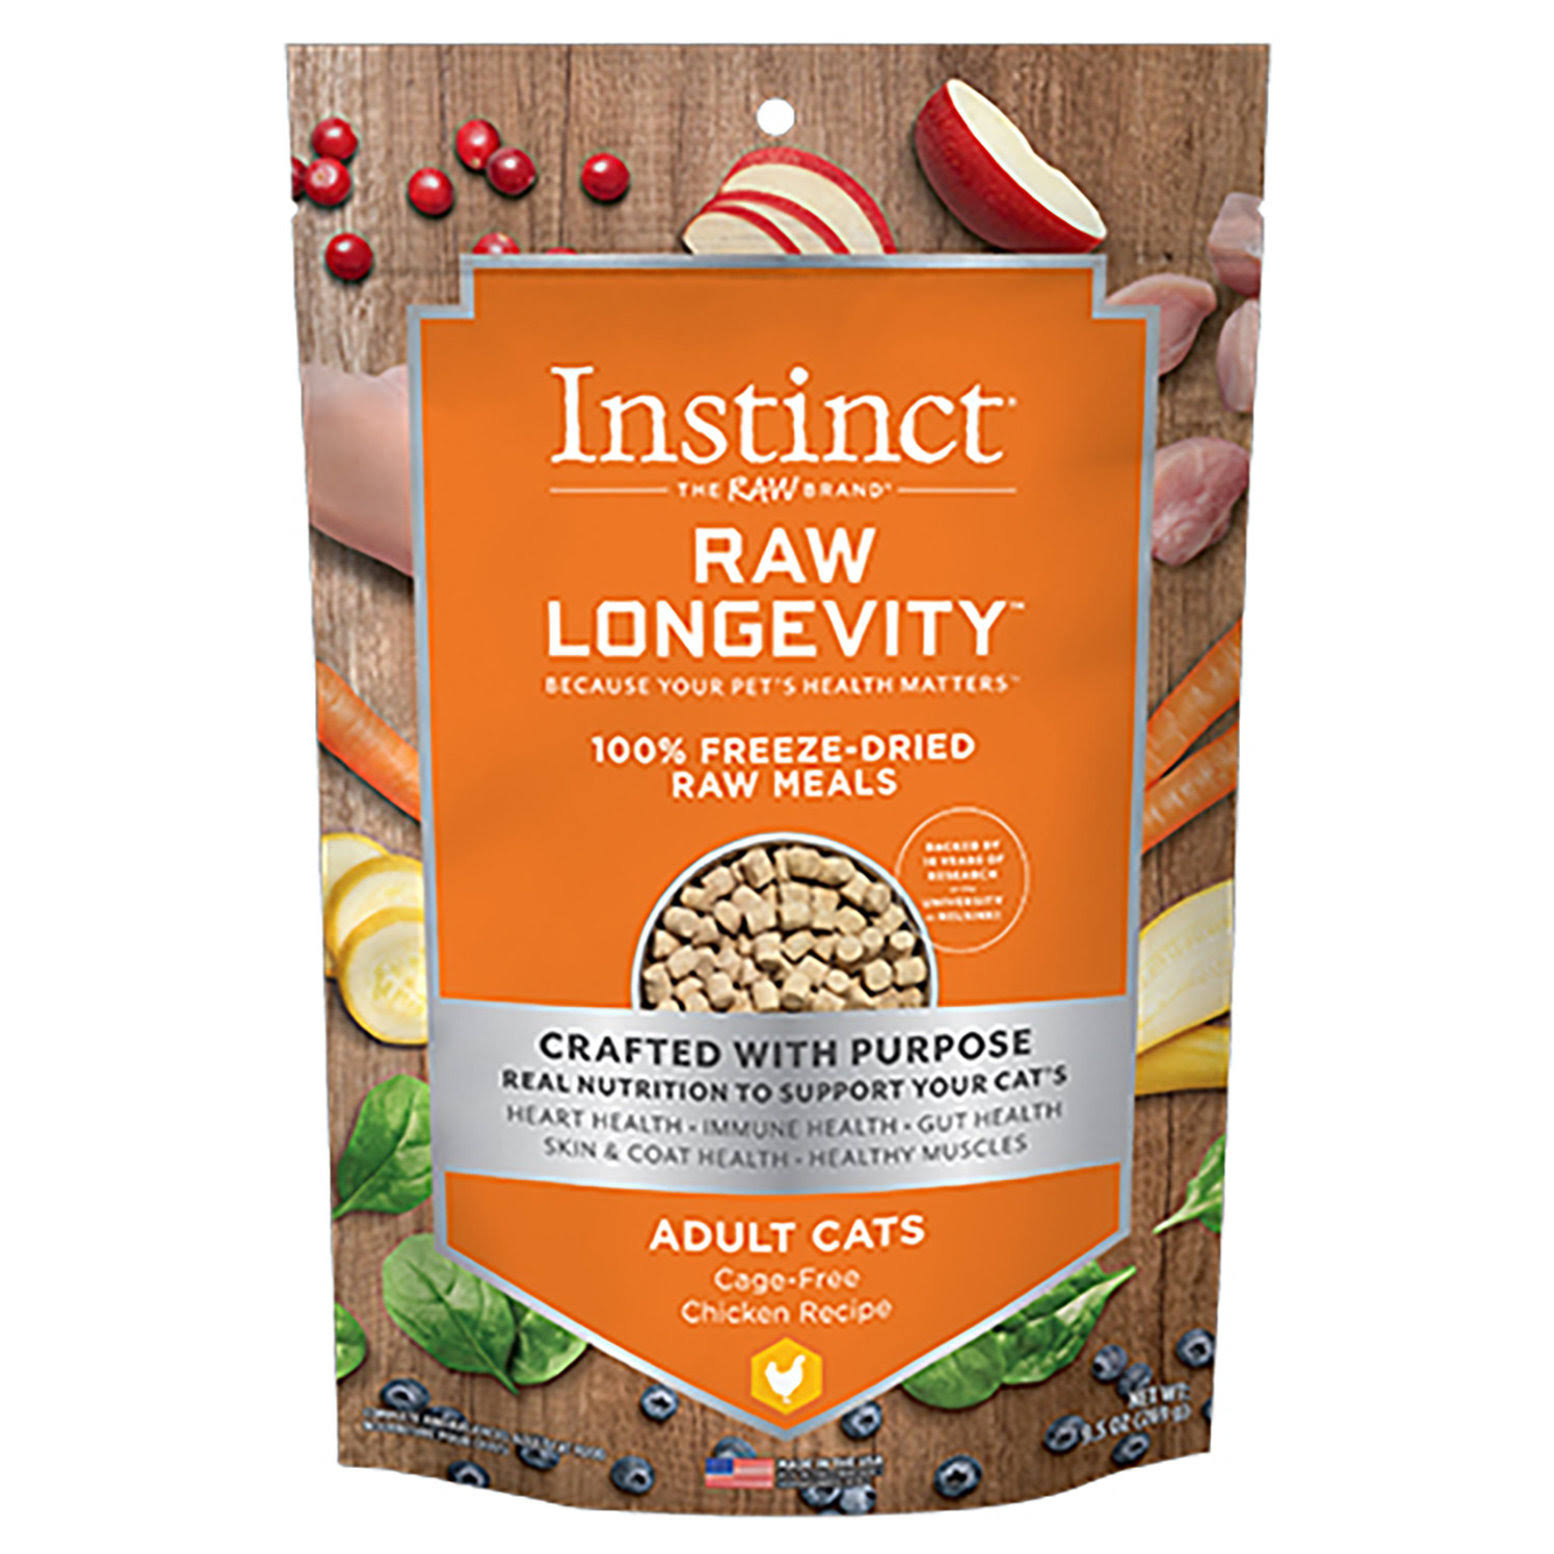 Instinct Raw Longevity Freeze Dried Meals - Chicken 9.5 oz